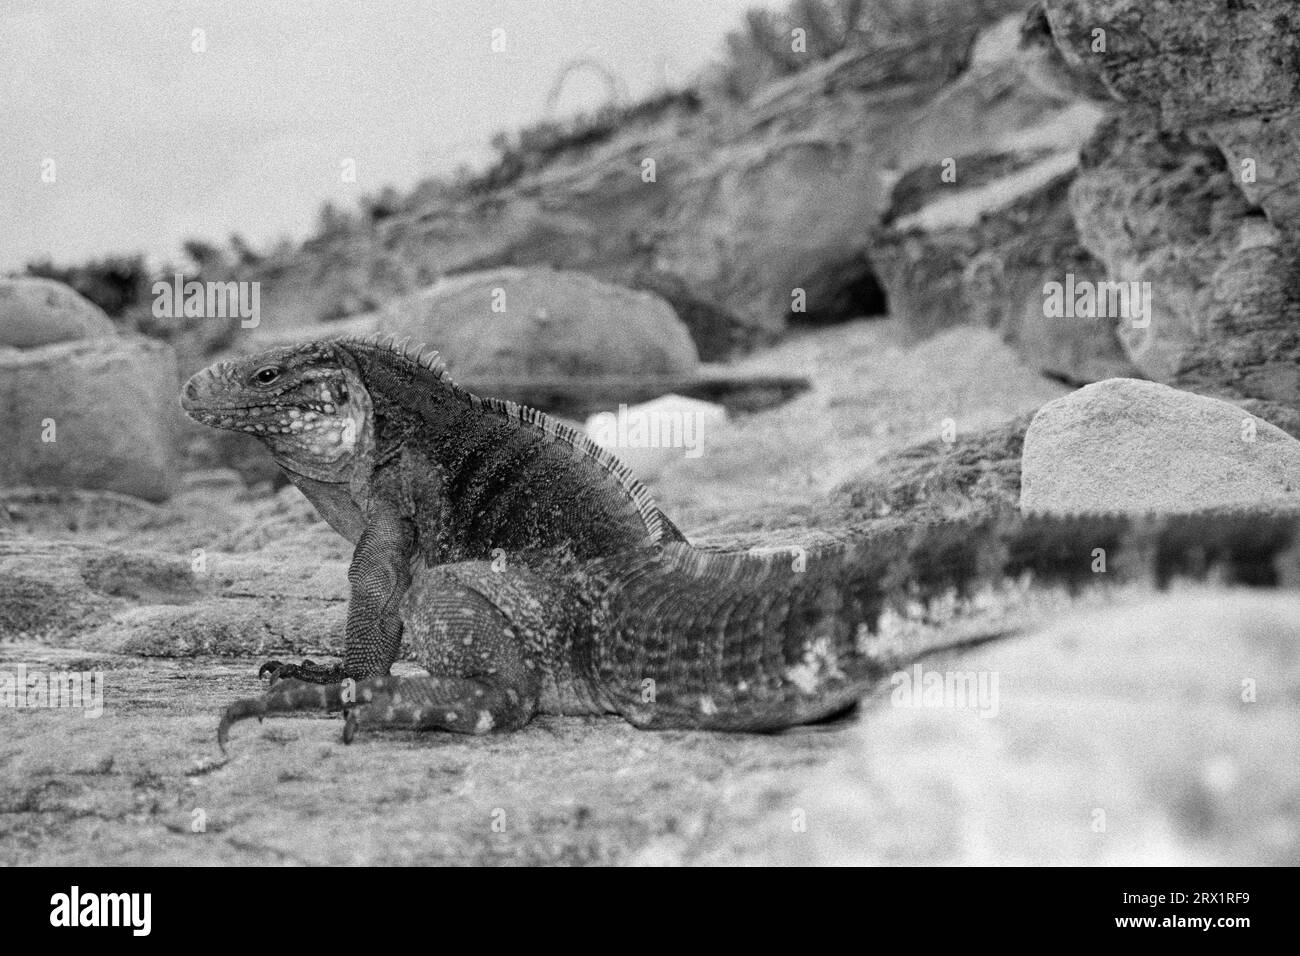 Iguane à queue ceinturée, Cayo Largo Cuba, noir et blanc Banque D'Images